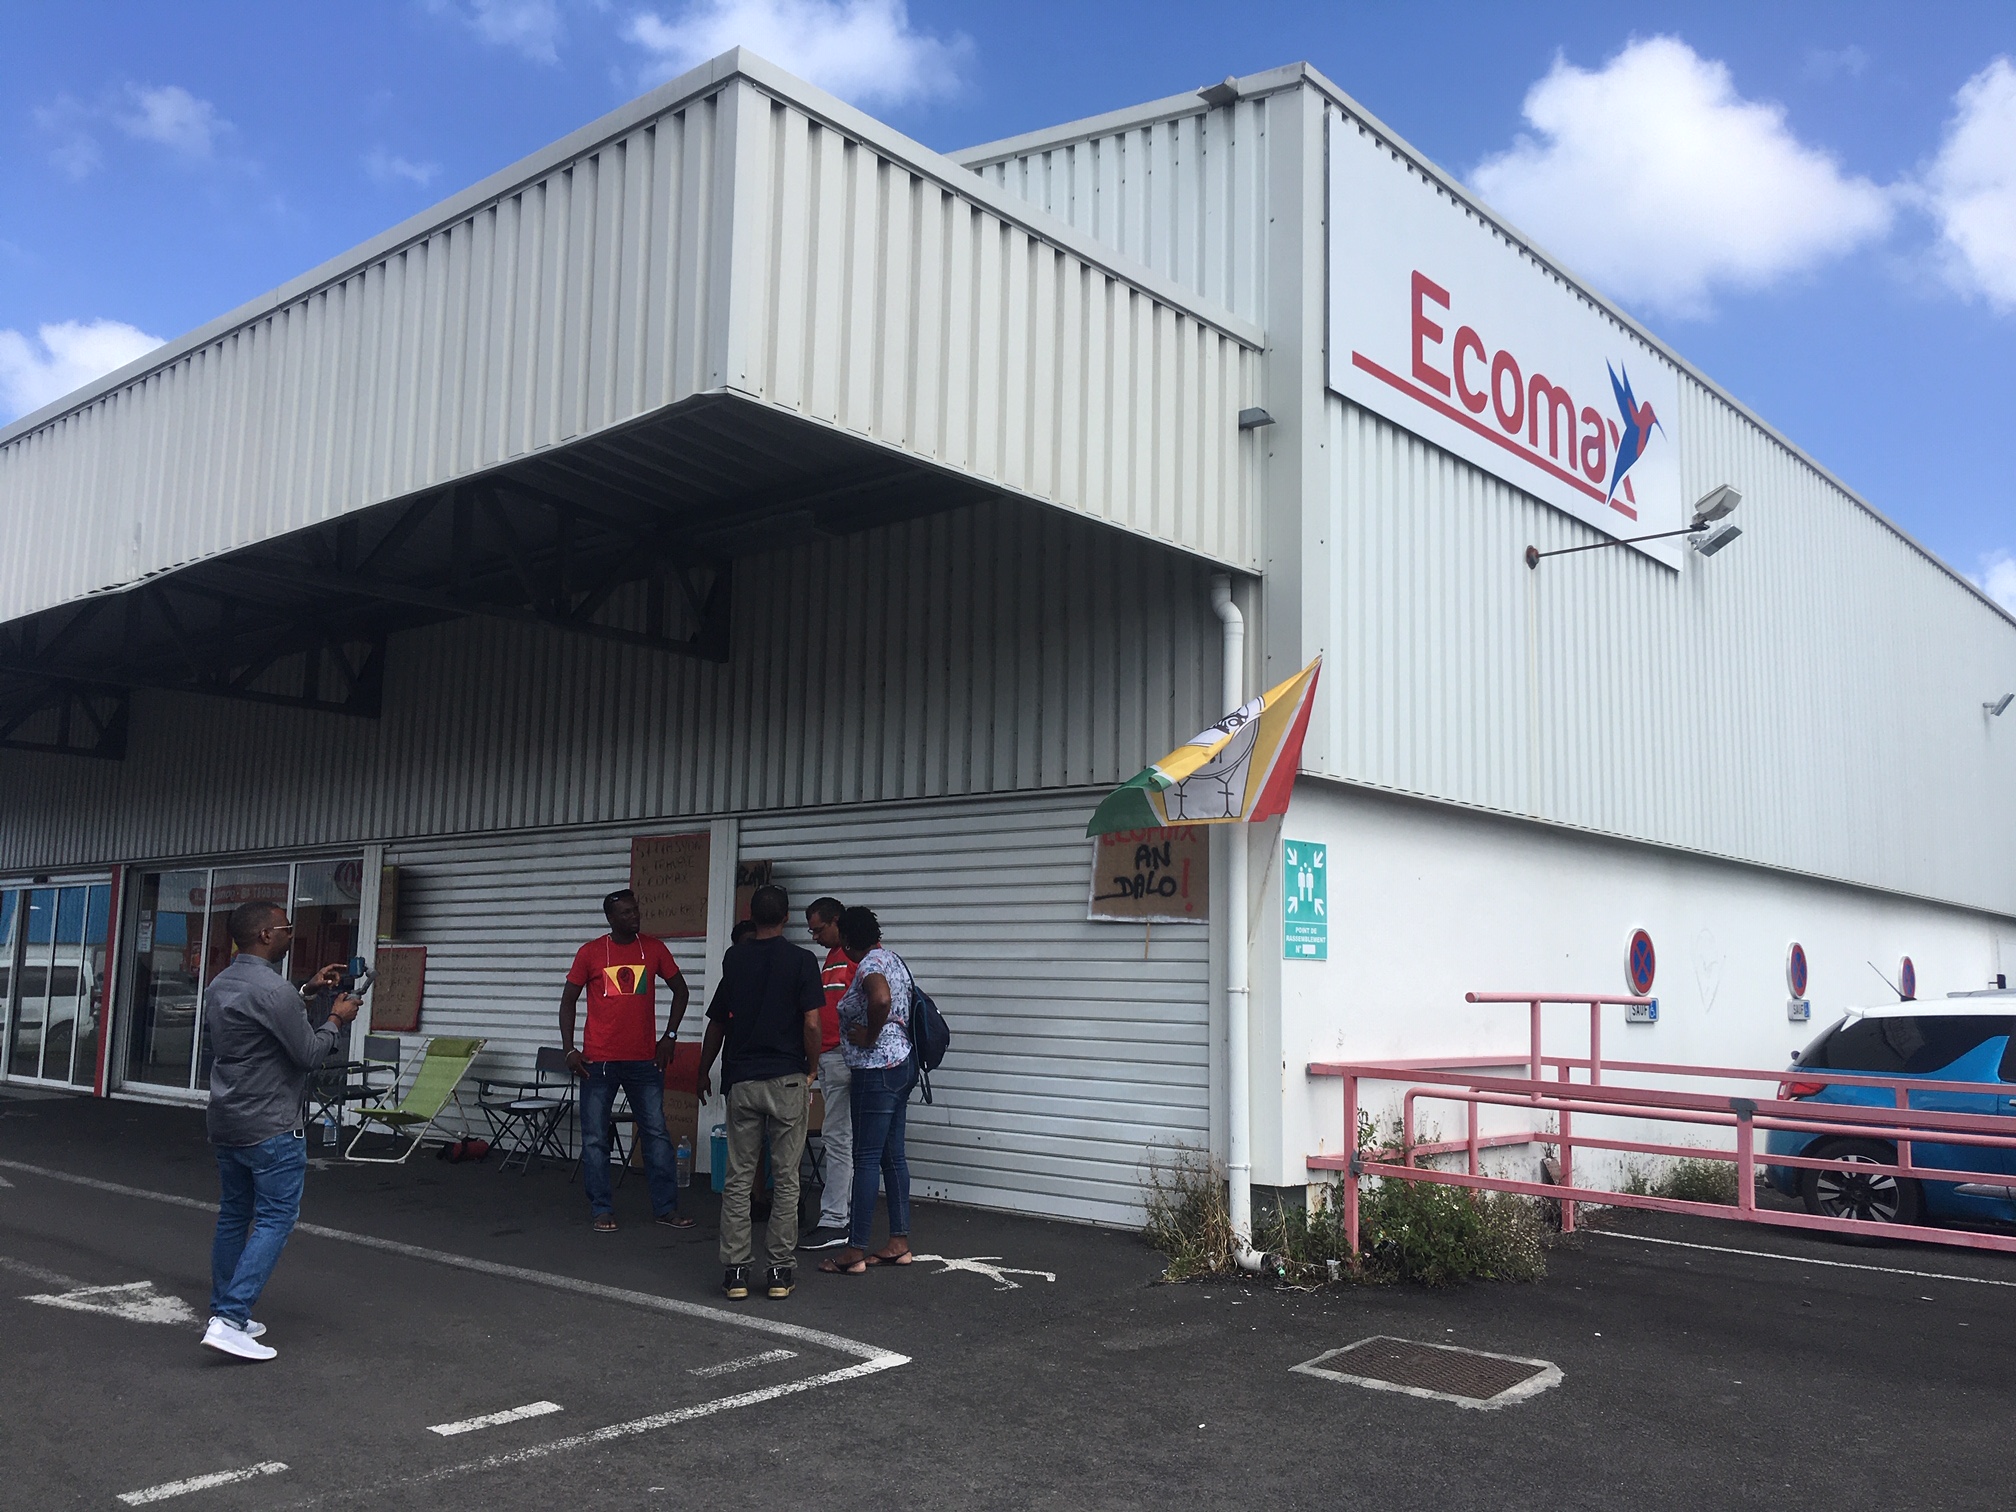     Les salariés d'Ecomax sont en grève en Guadeloupe

